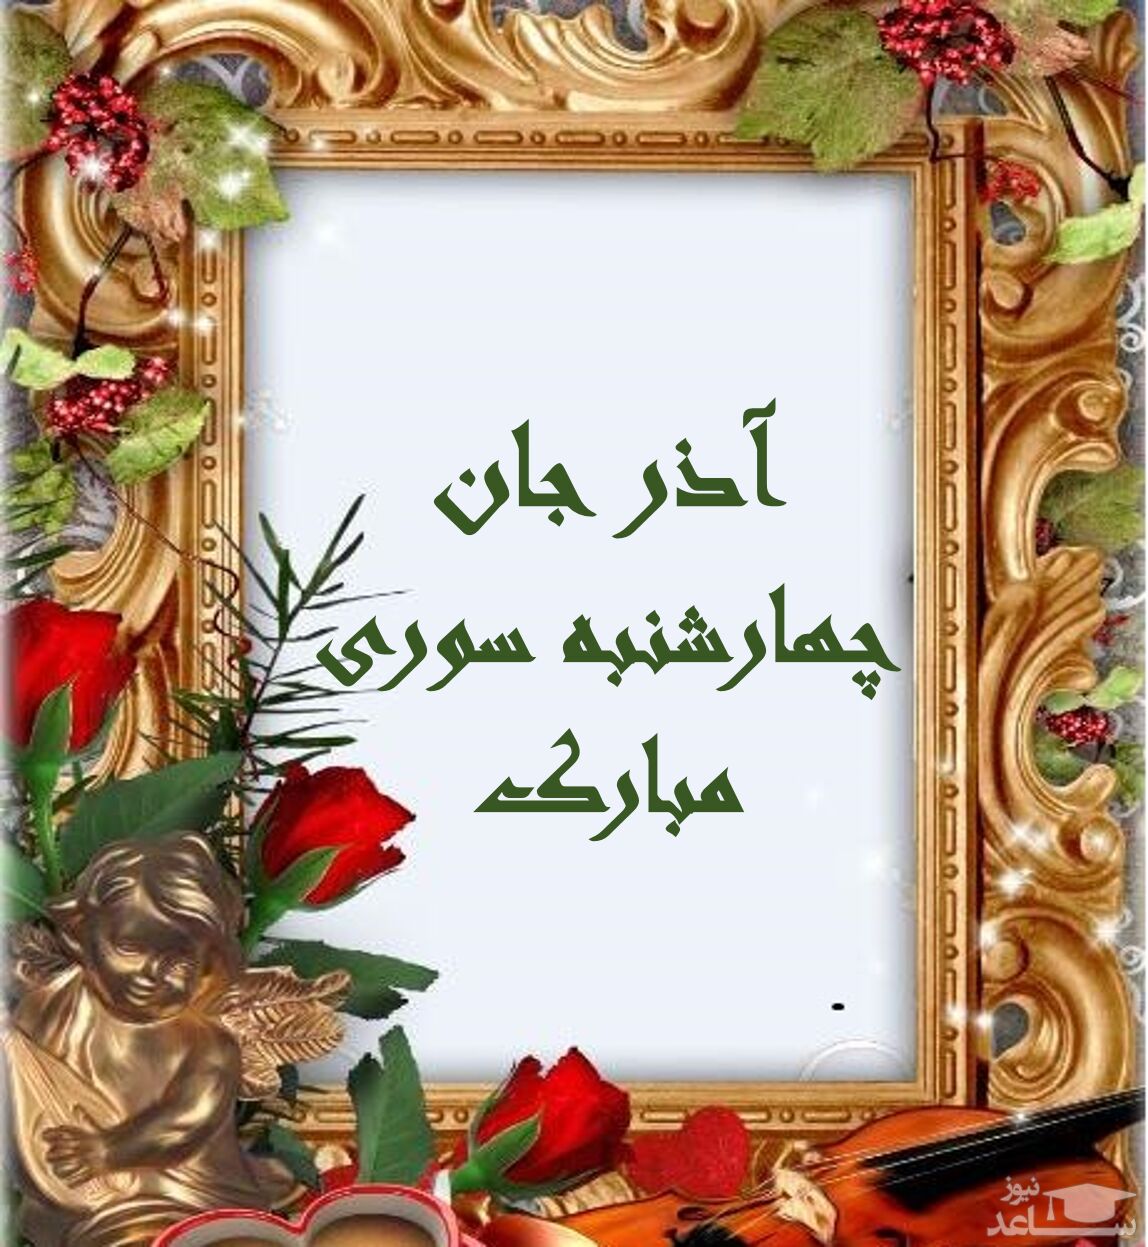 زیباترین پیام های تبریک چهارشنبه سوری برای آذر